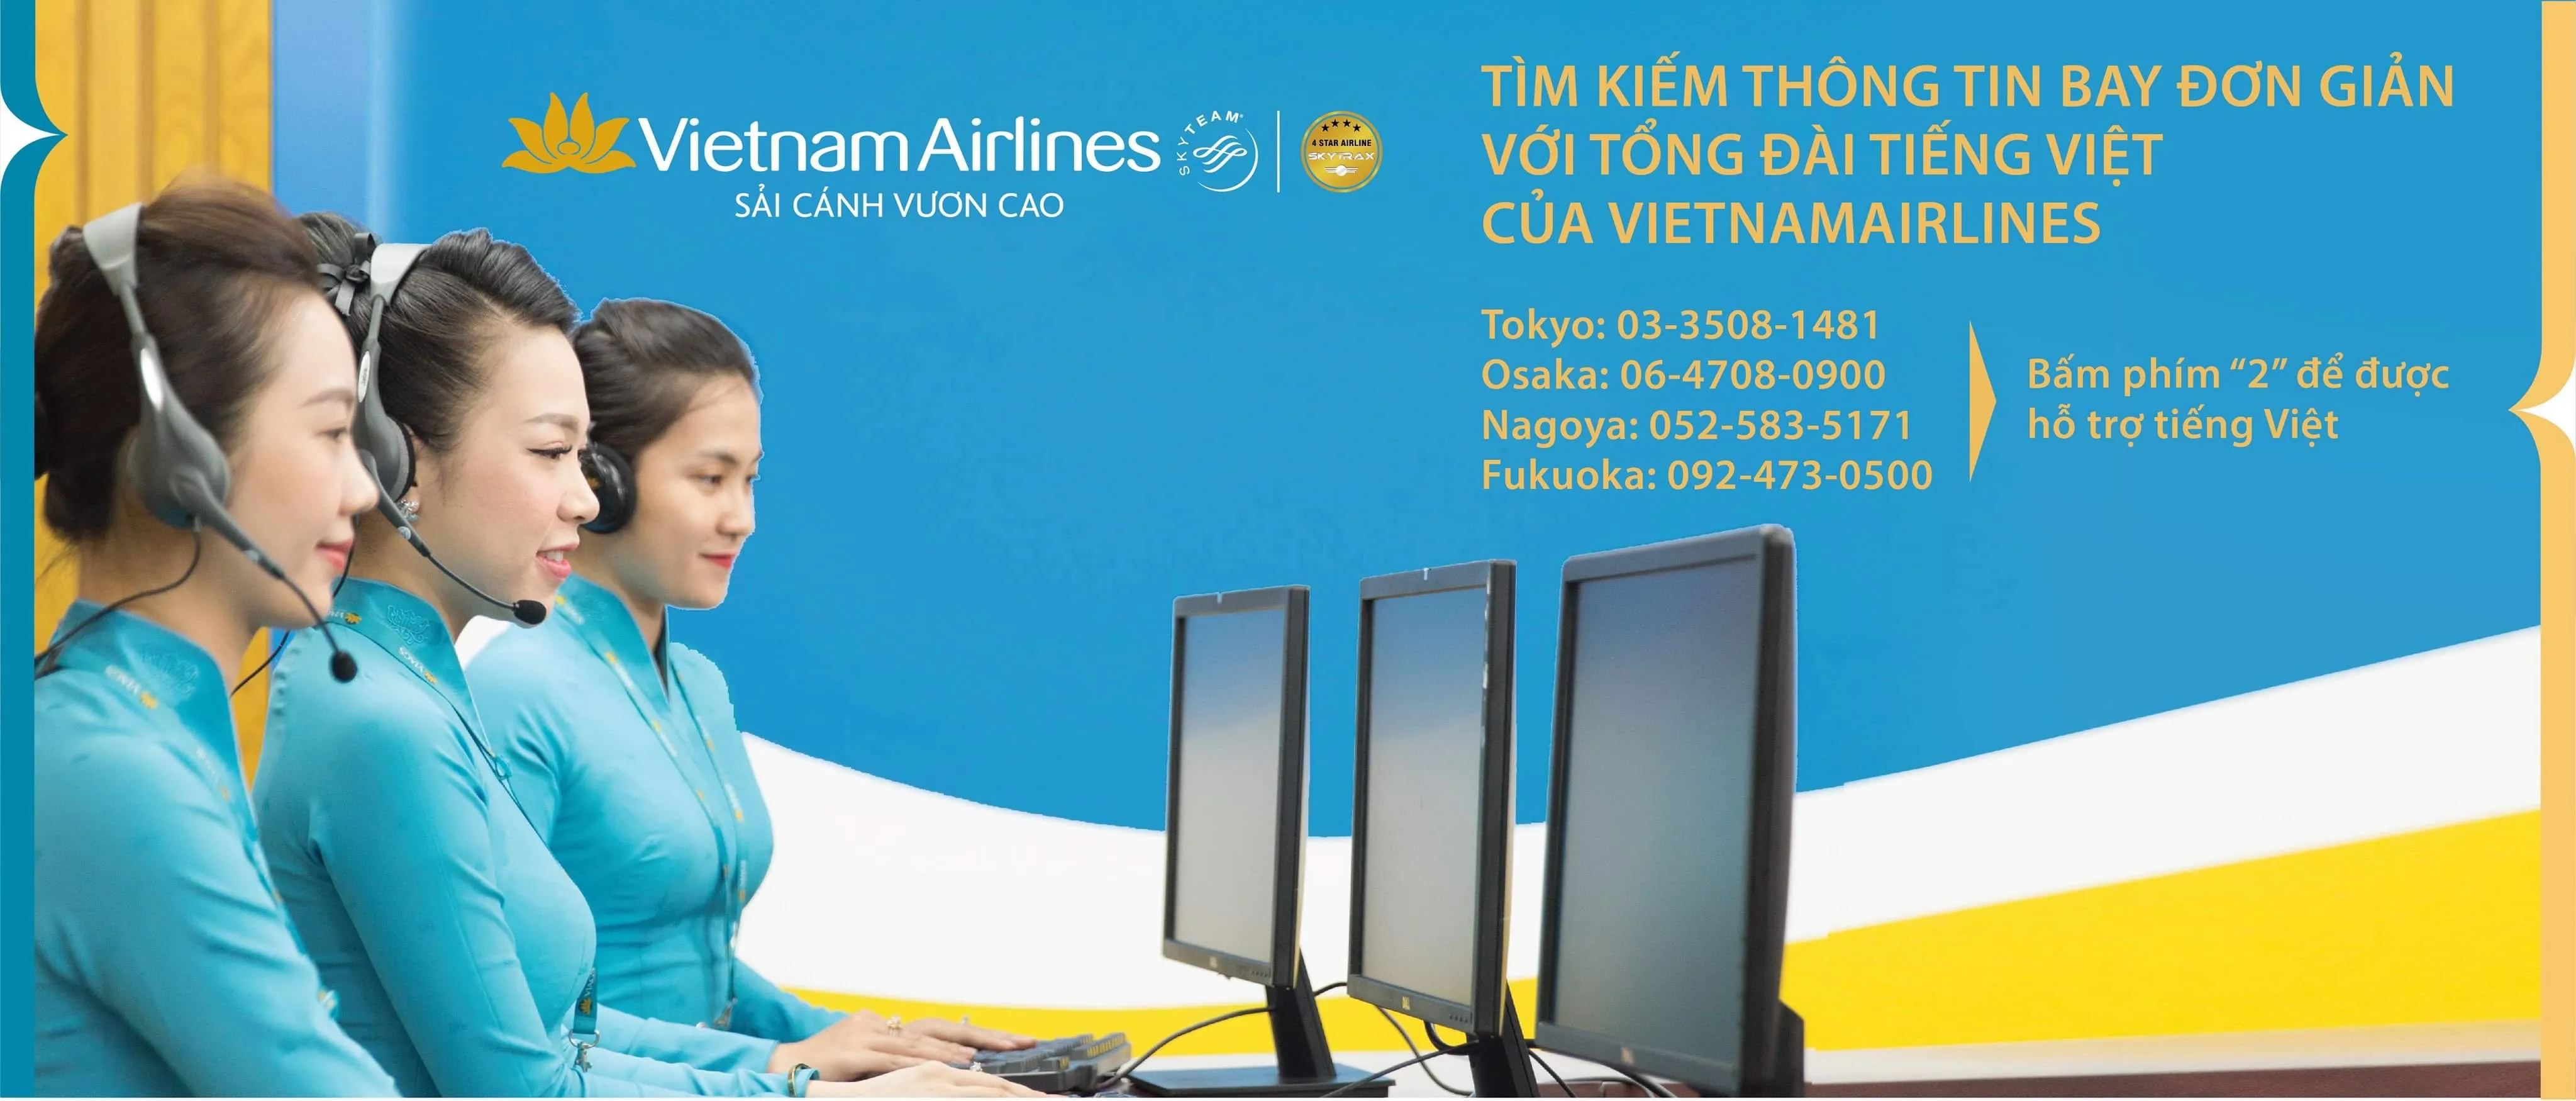 Vietnam Airline Sugoi